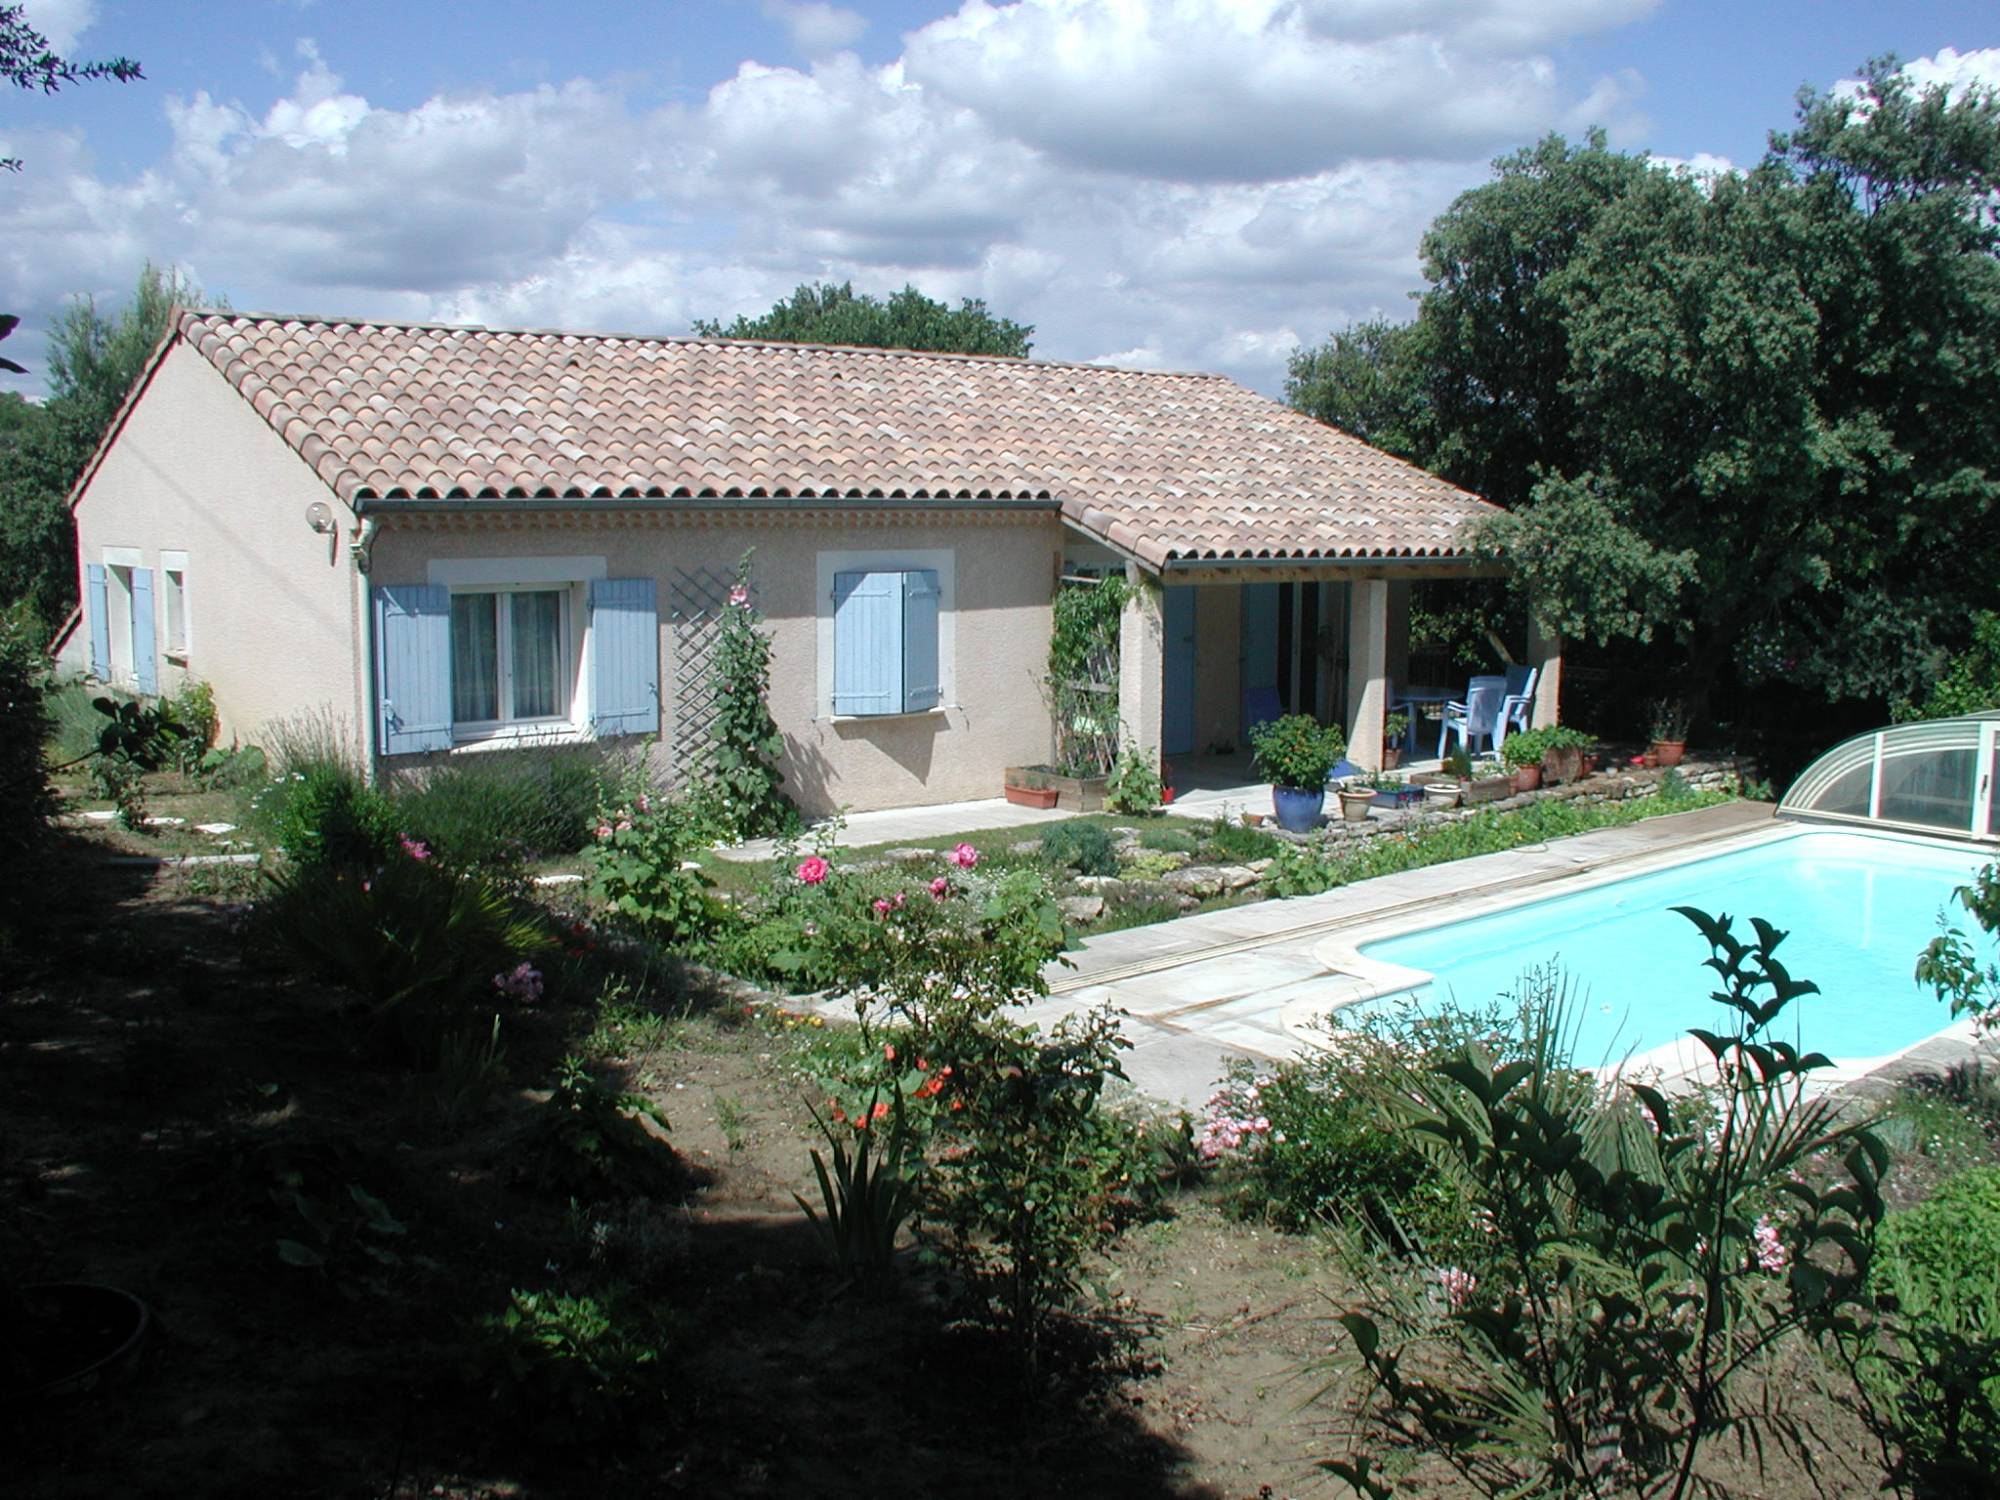 Location de vacances en Proveence, sud Drôme piscine privée 